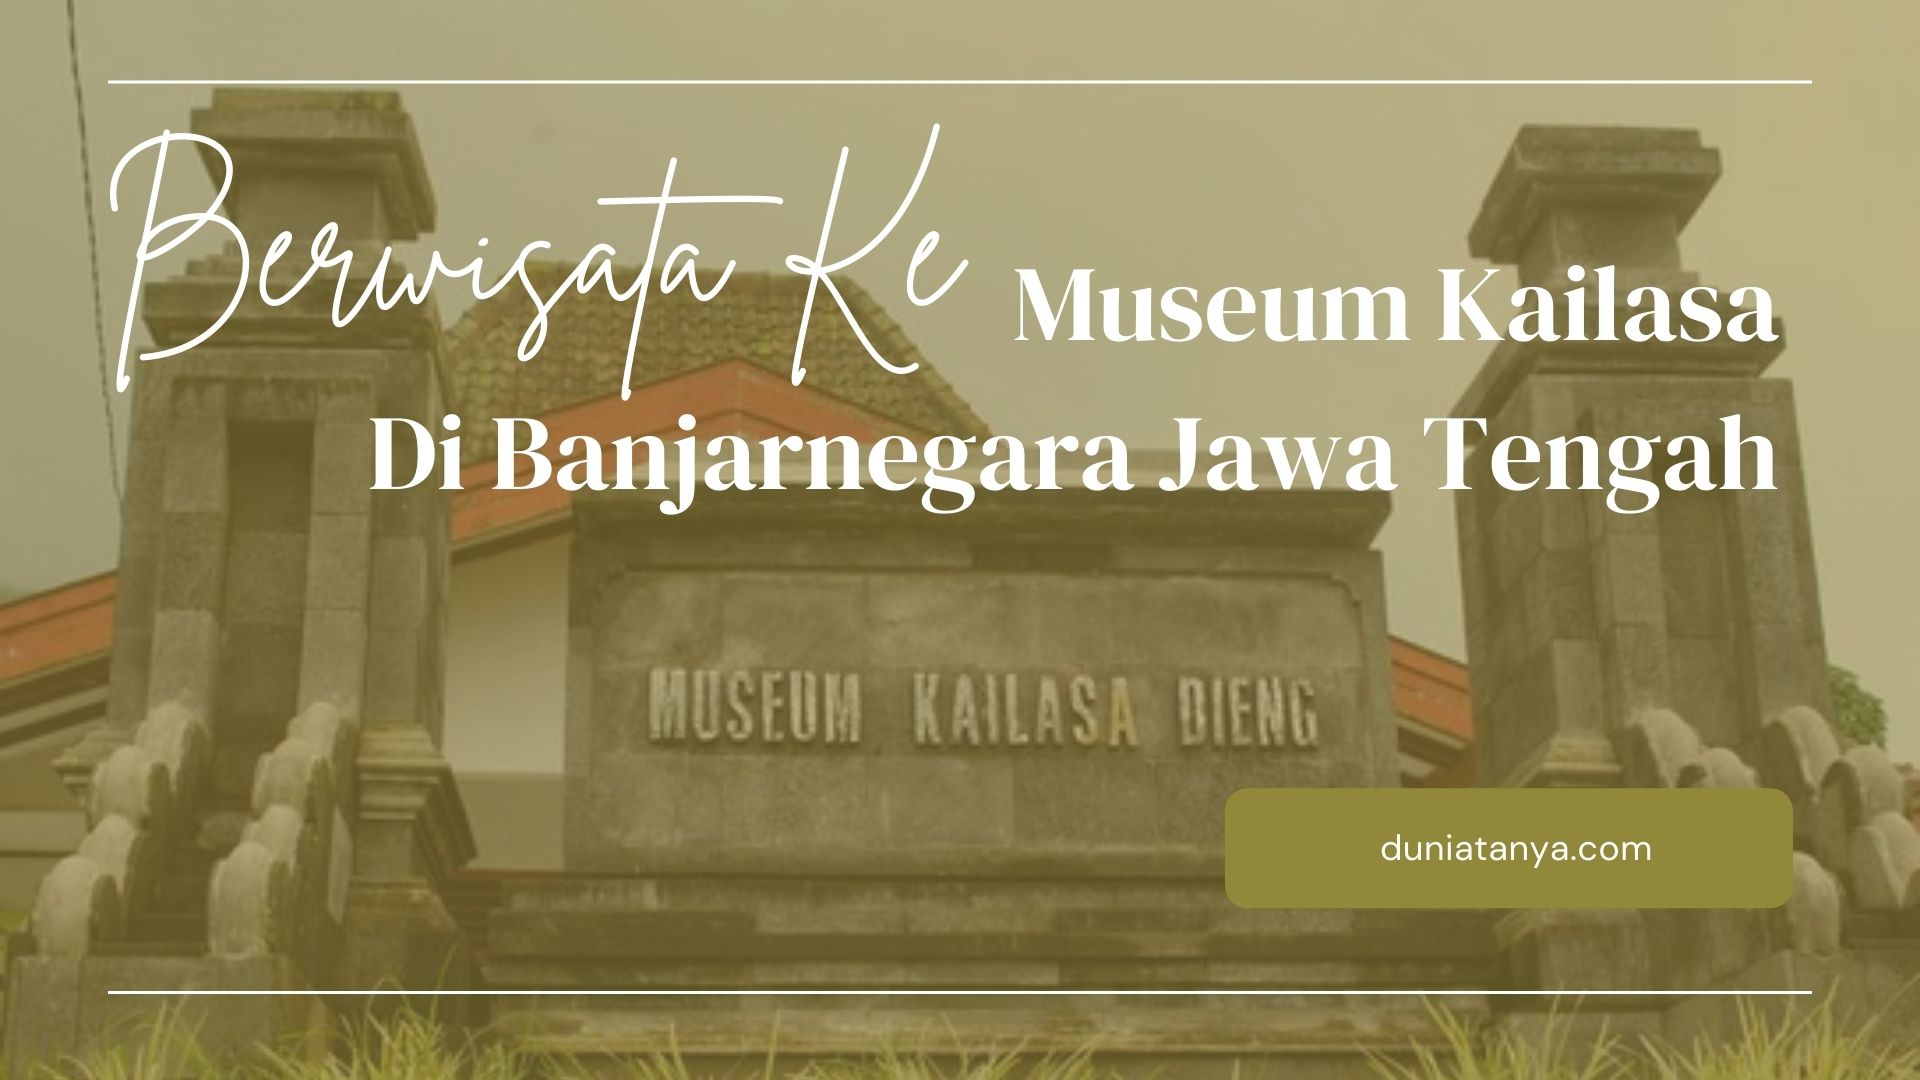 You are currently viewing Berwisata Ke Museum Kailasa Di Banjarnegara Jawa Tengah